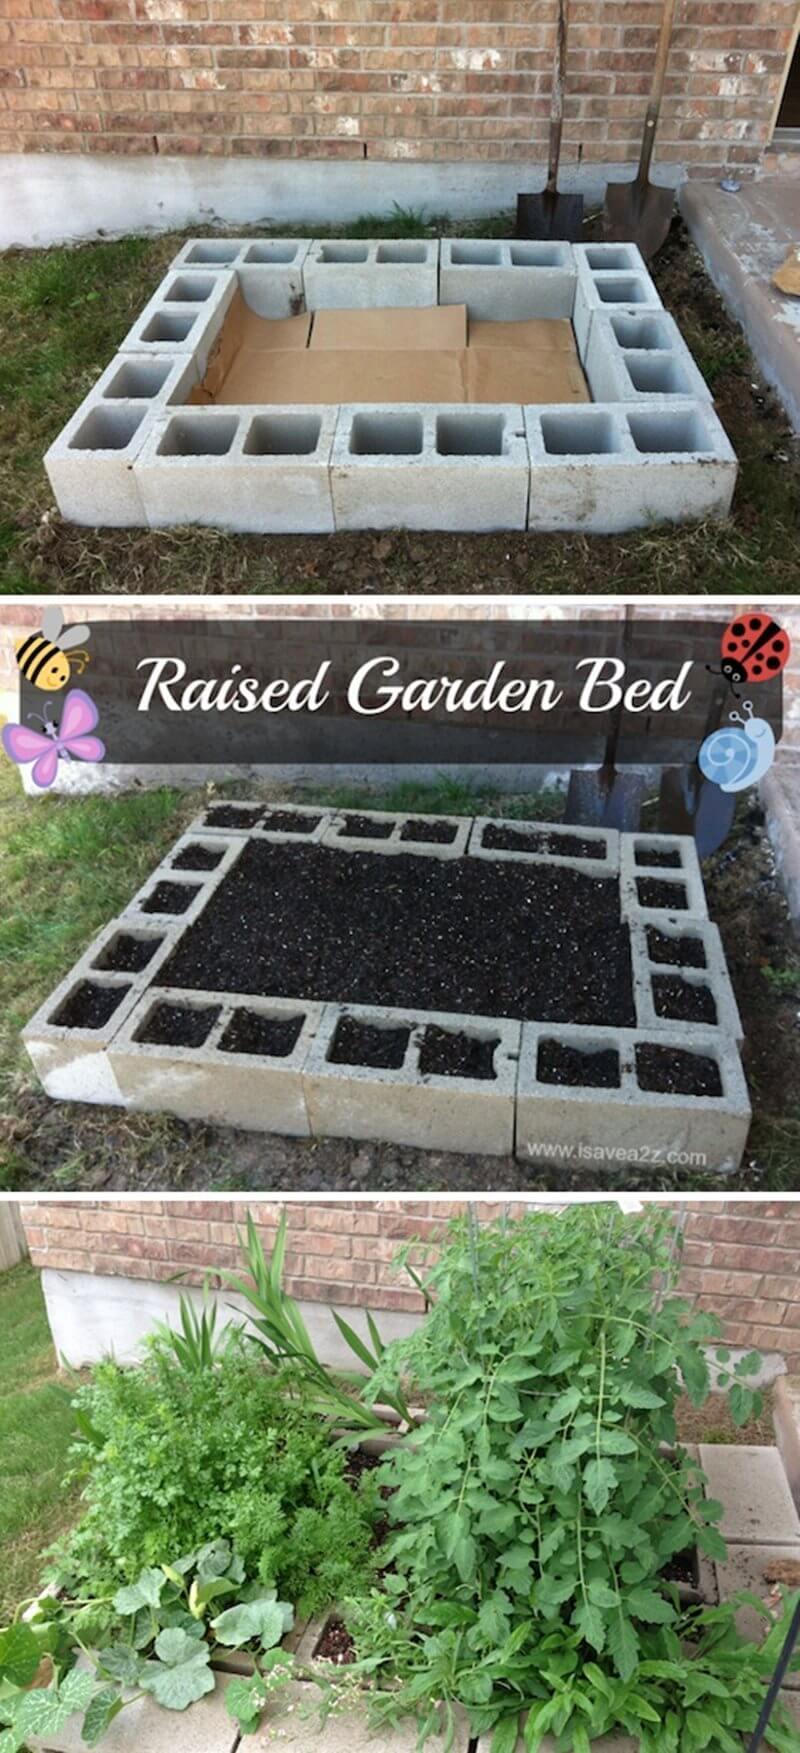 Raised Garden Bed with Cinder Blocks